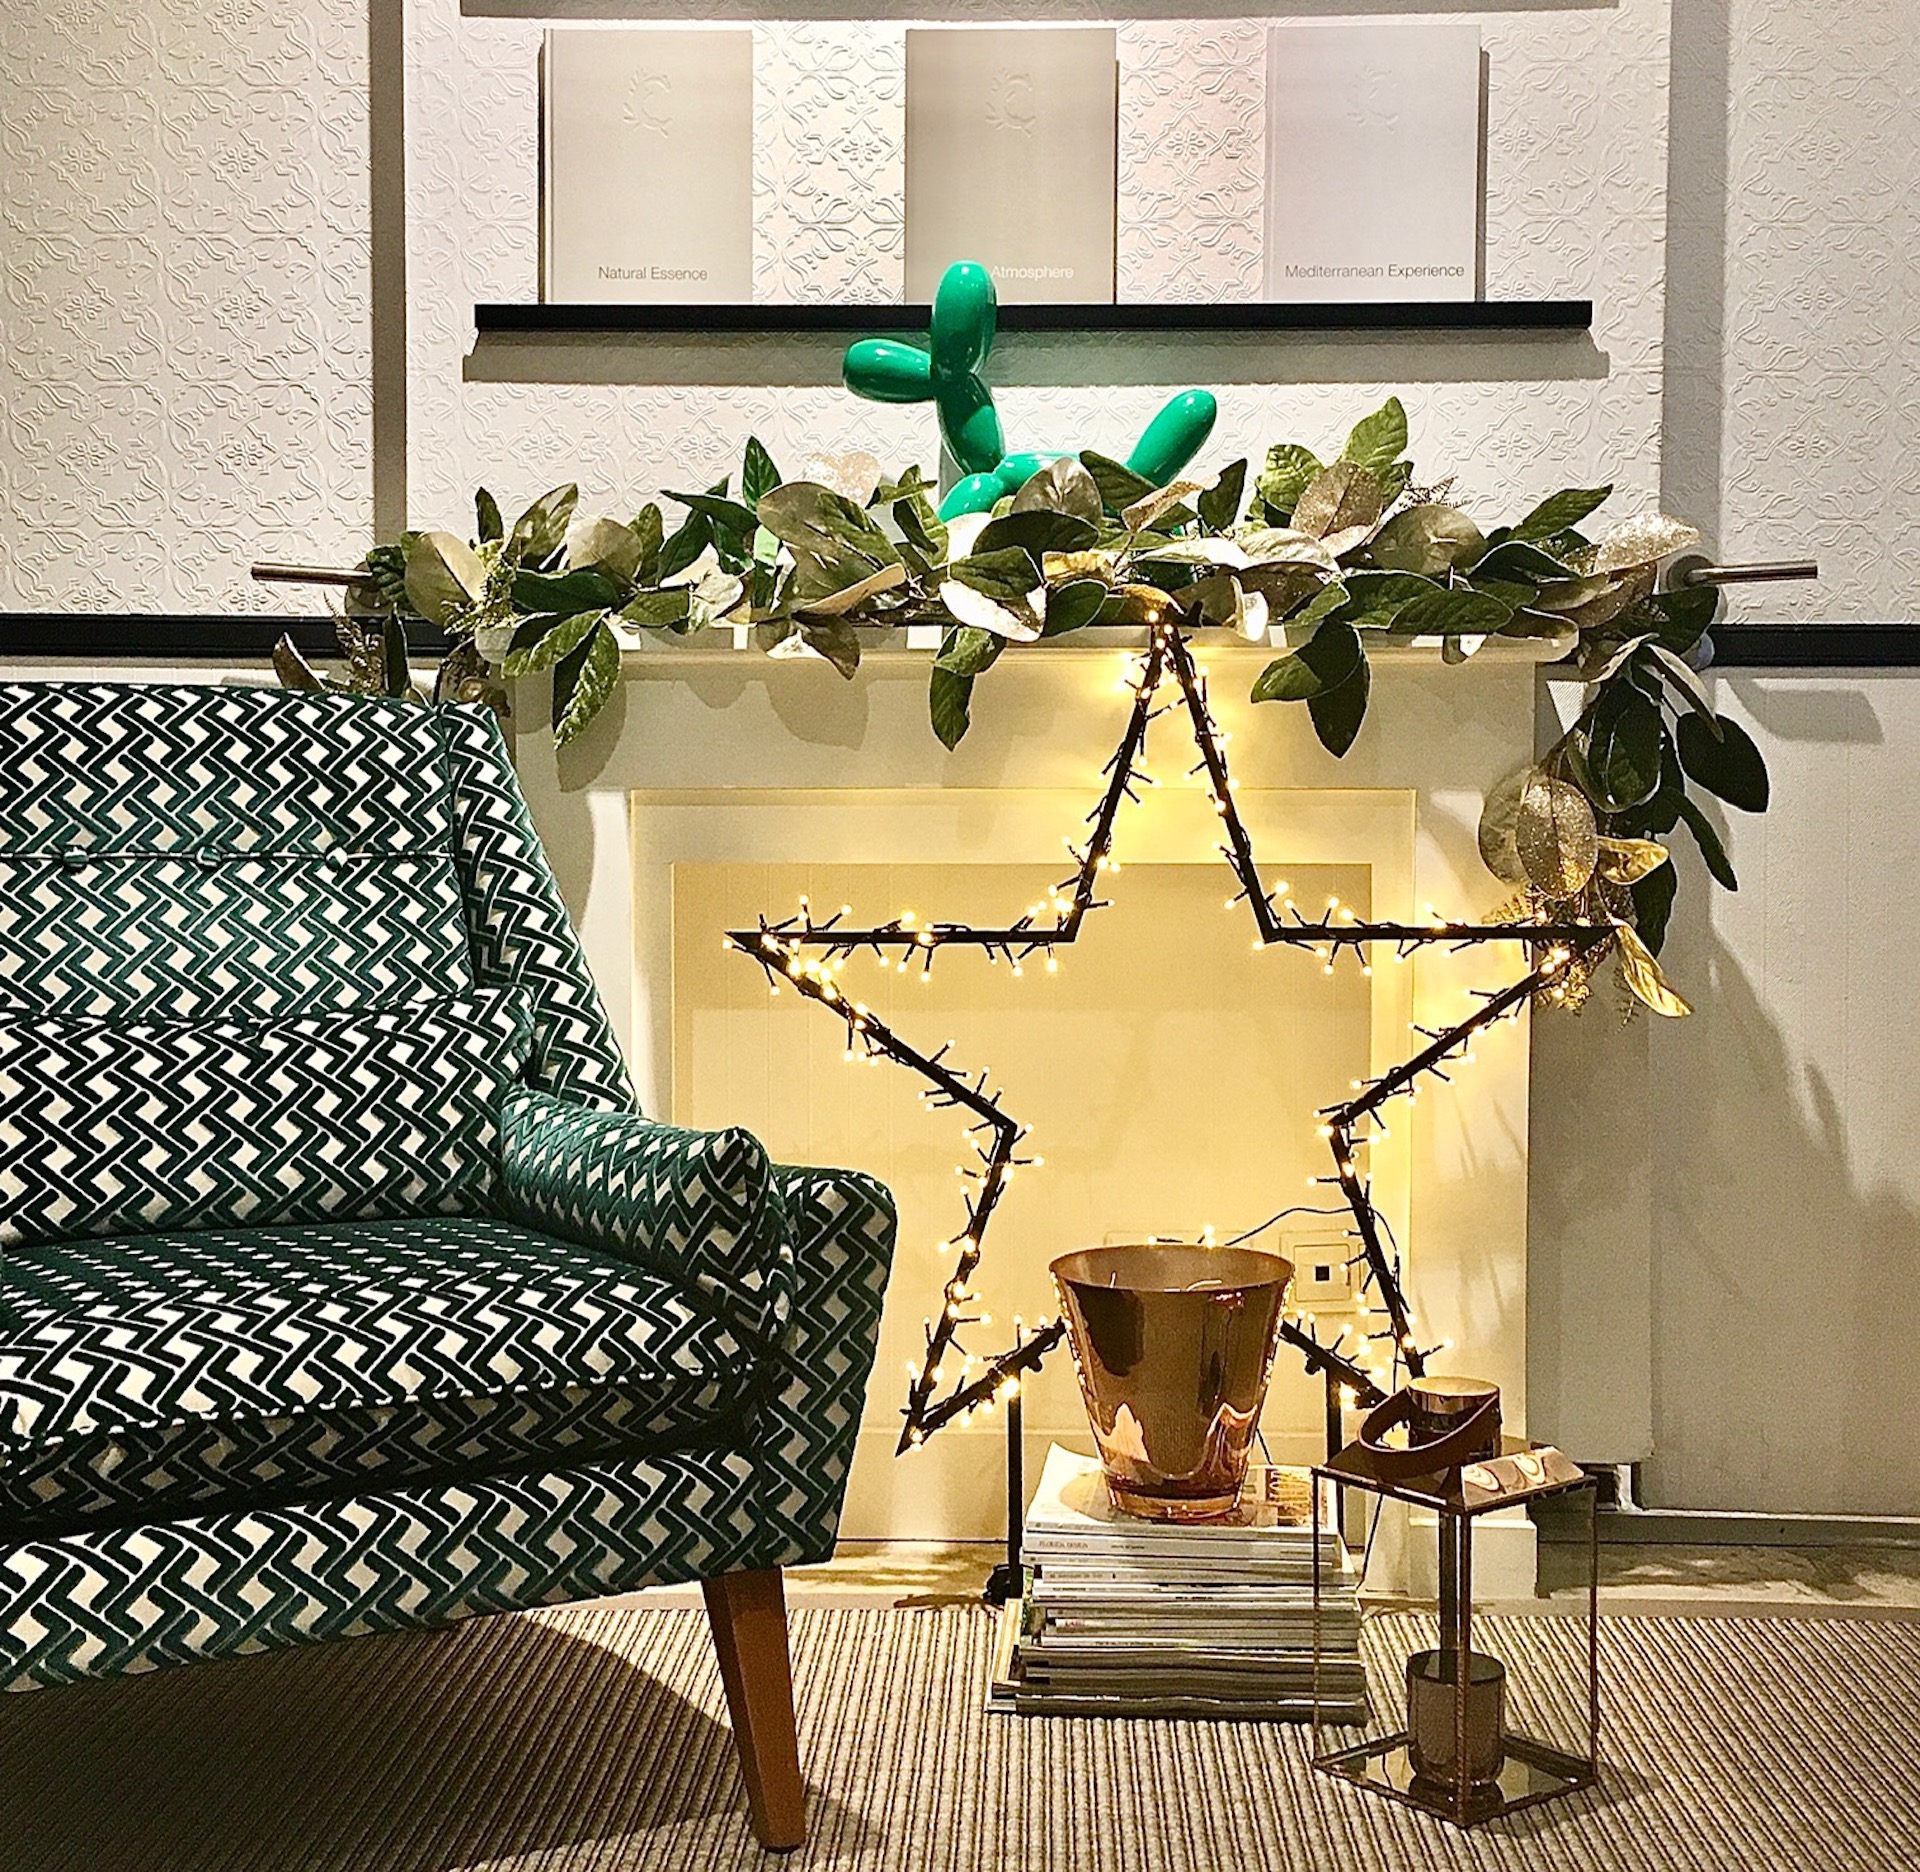 Les claus inspiracionals de la decoració nadalenca 2020, per Eva Mesa